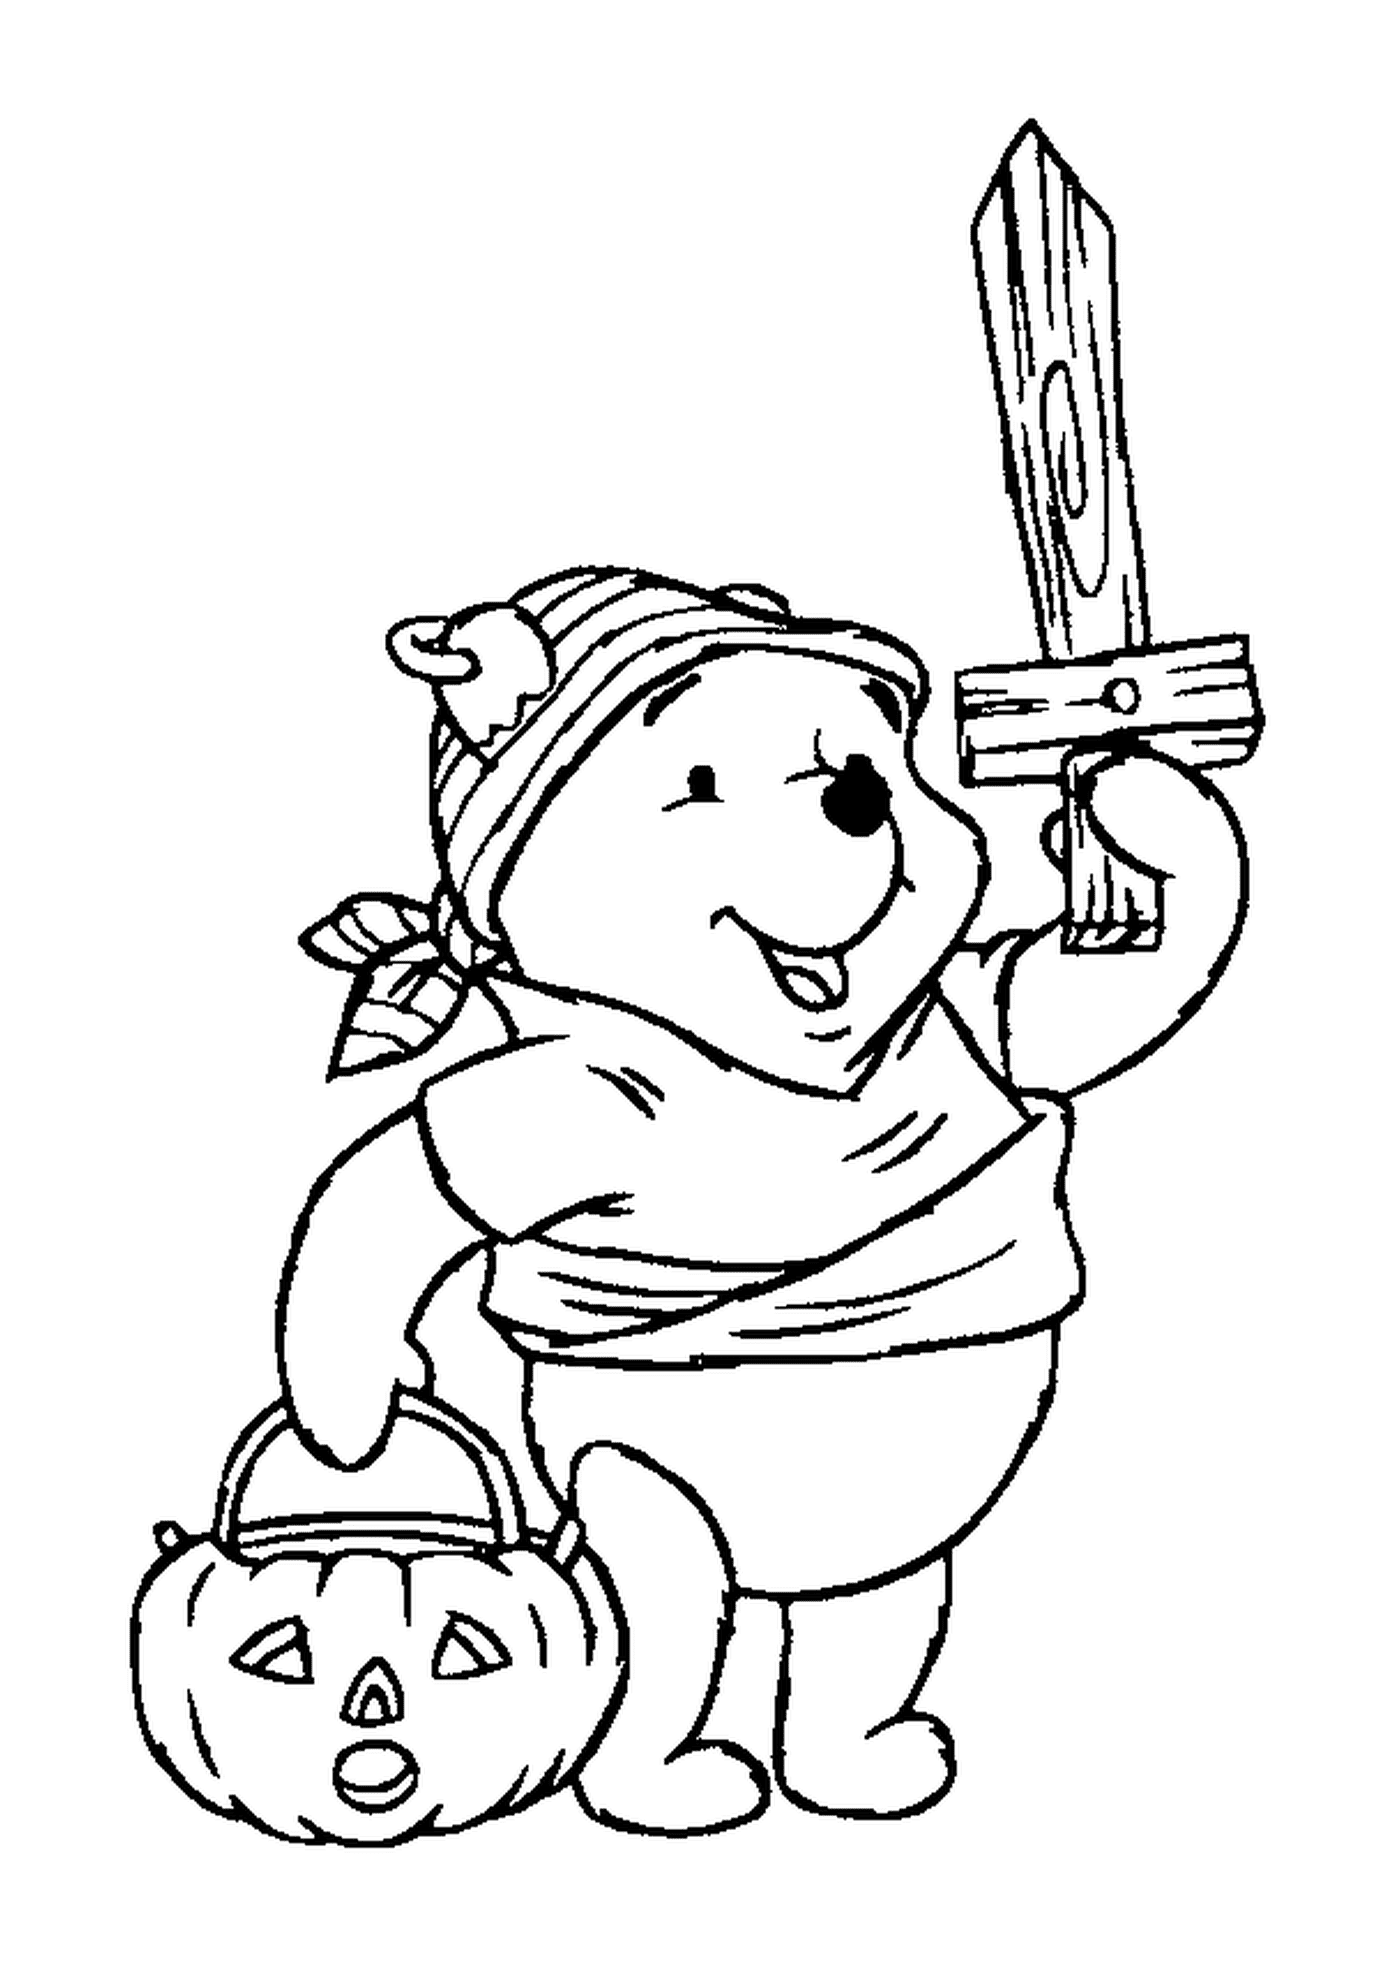  Winnie disfarçado de pirata com um saco de abóbora 